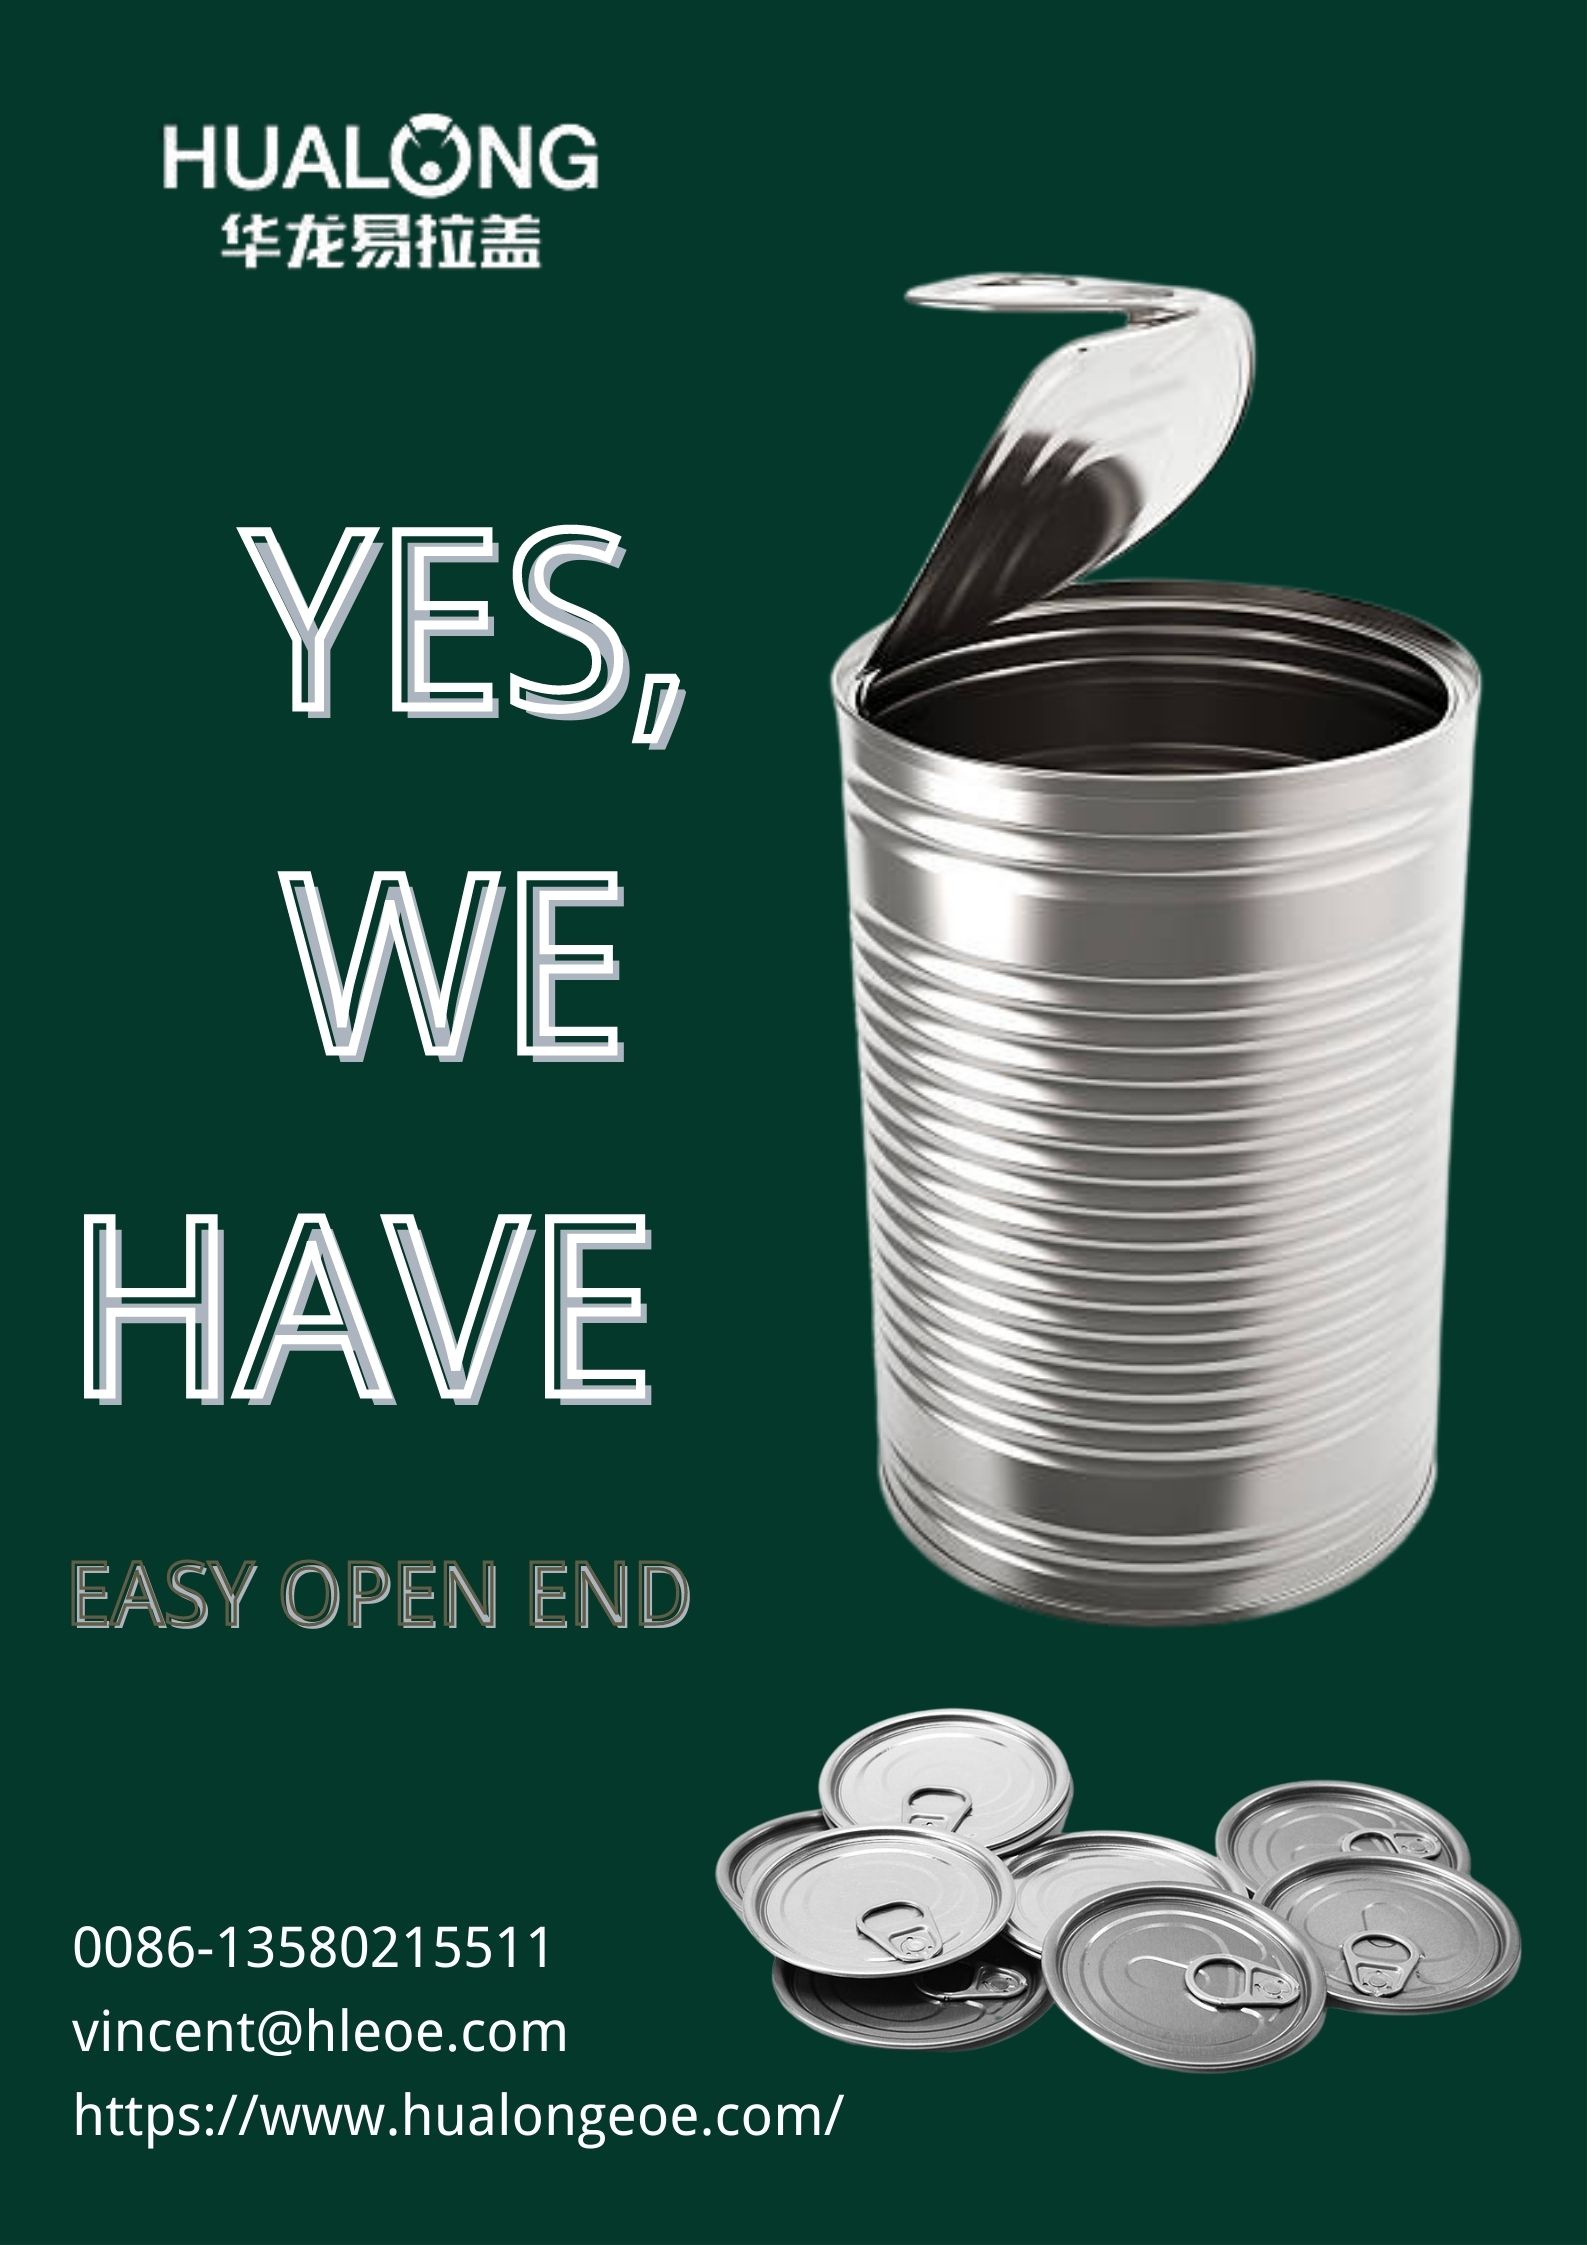 Hualong EOE: come riciclare correttamente l'Easy Open End?